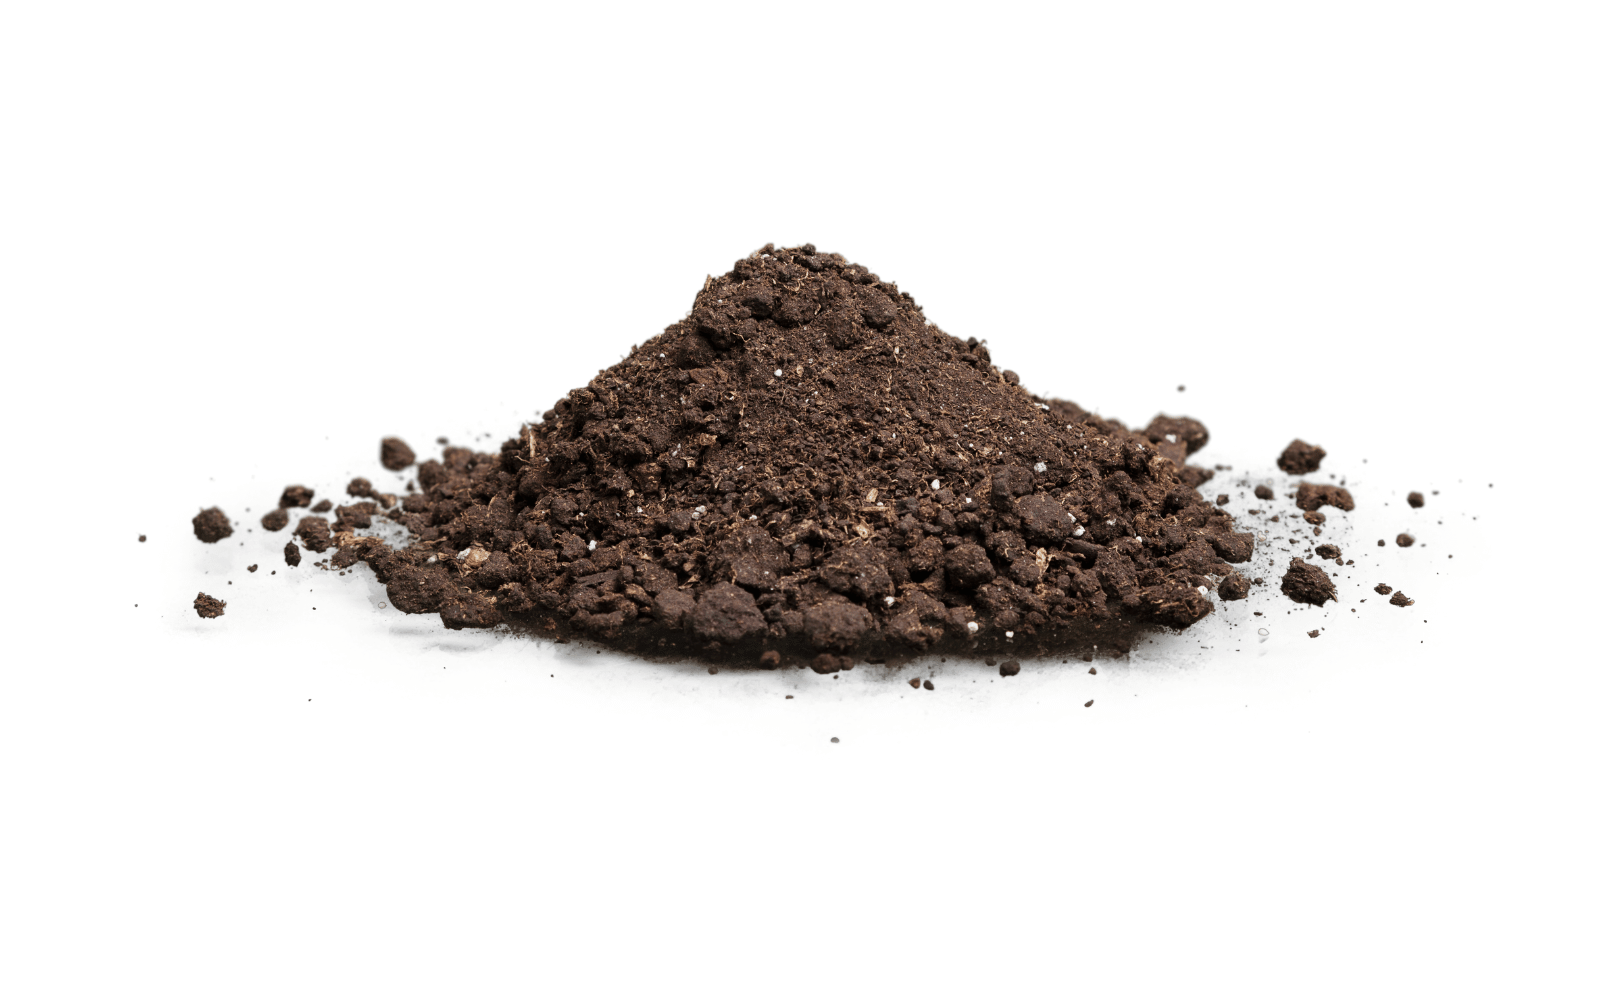 Mound of soil